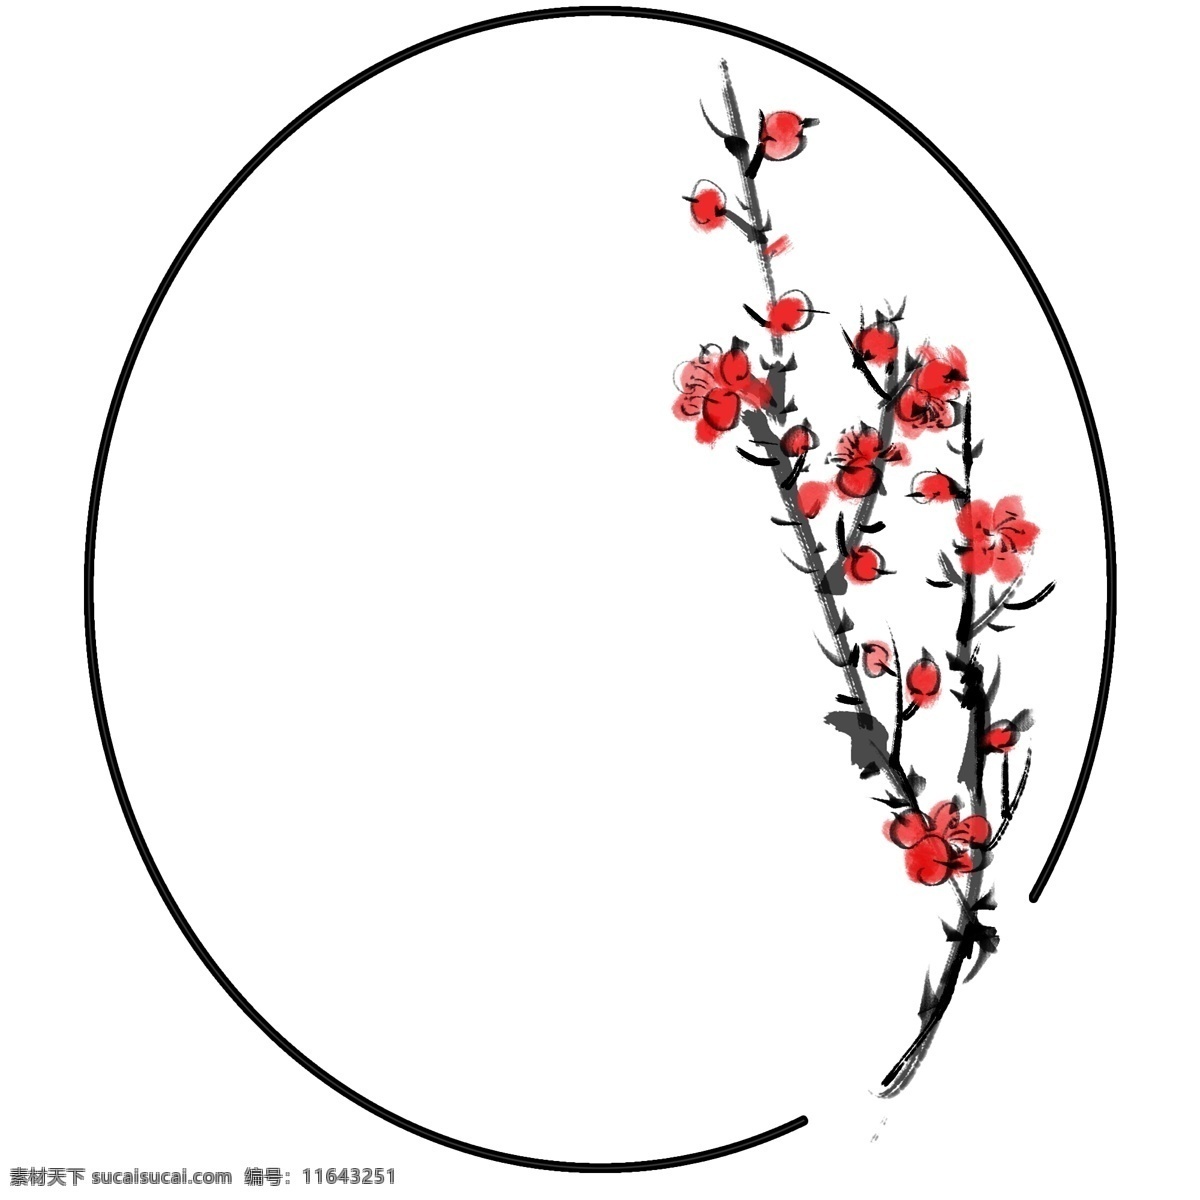 红色 梅花 卡通 插画 红色的梅花 卡通插画 梅花插画 花朵 鲜花 花束 花枝 花瓣 盛开的梅花